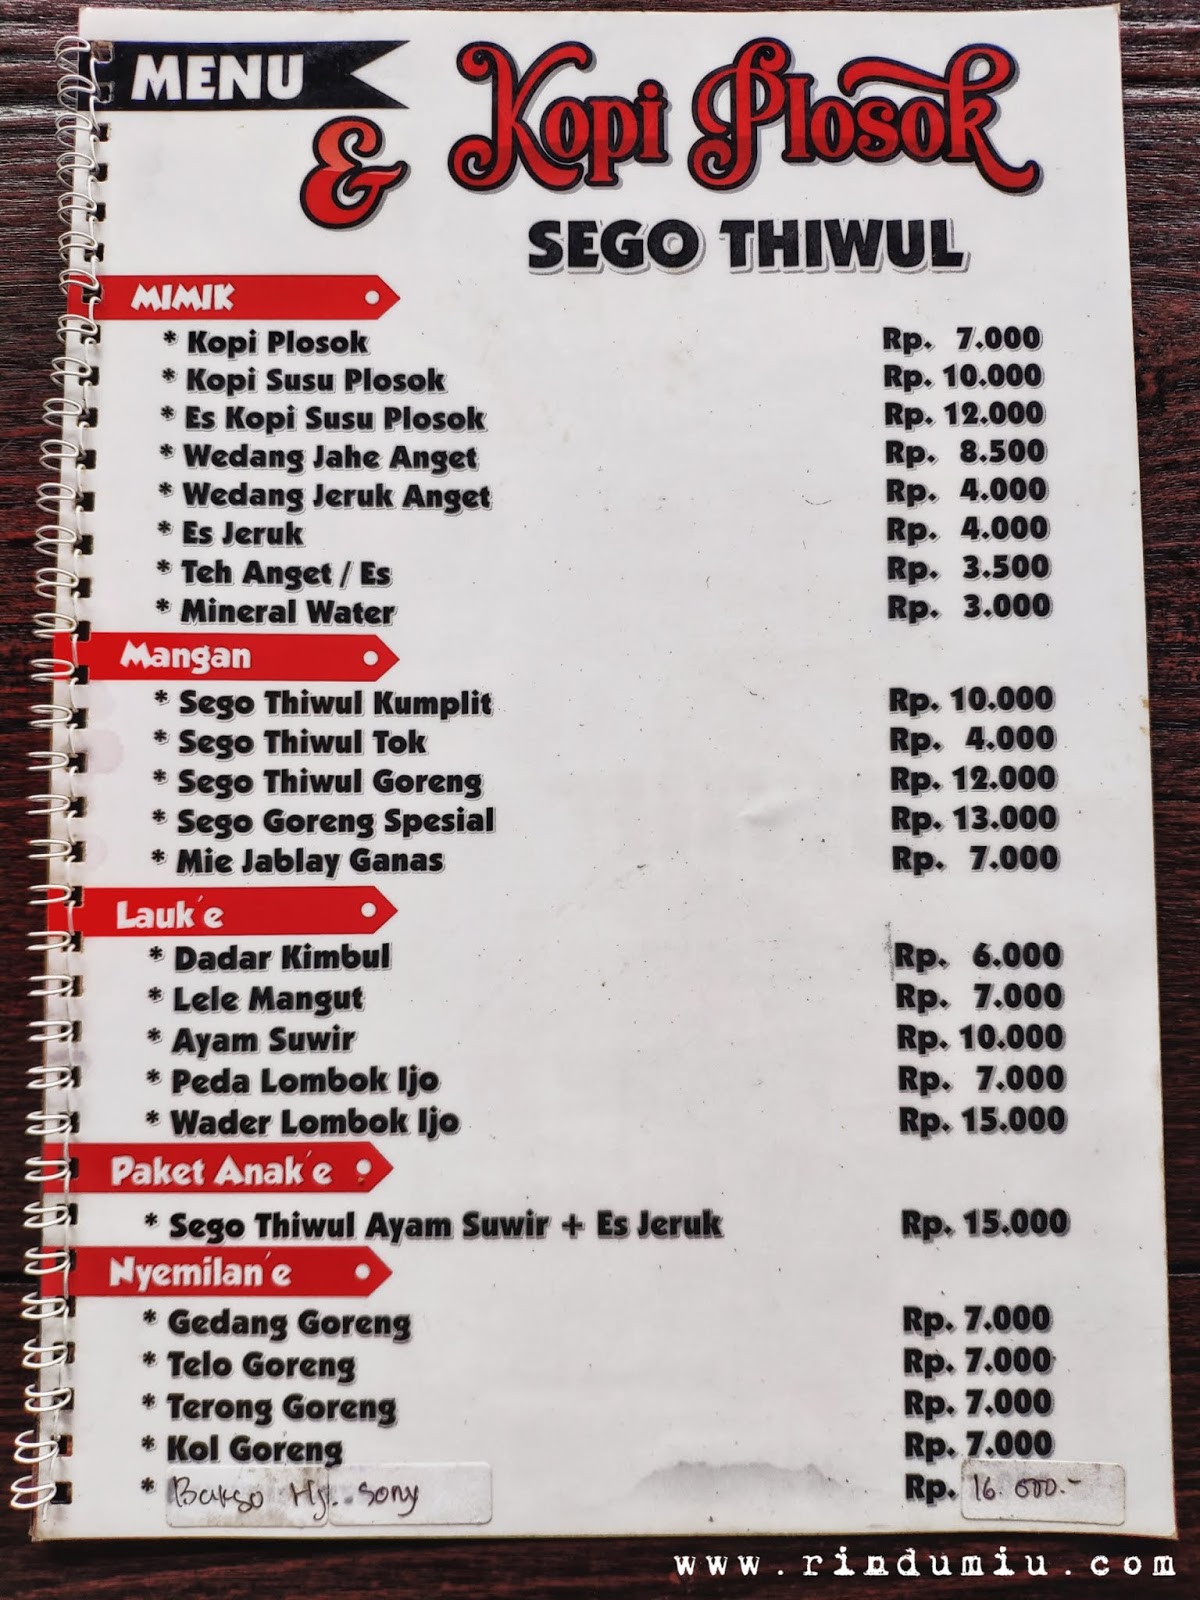 menu of kopi plosok sego thiwul cafe in sleman jogja